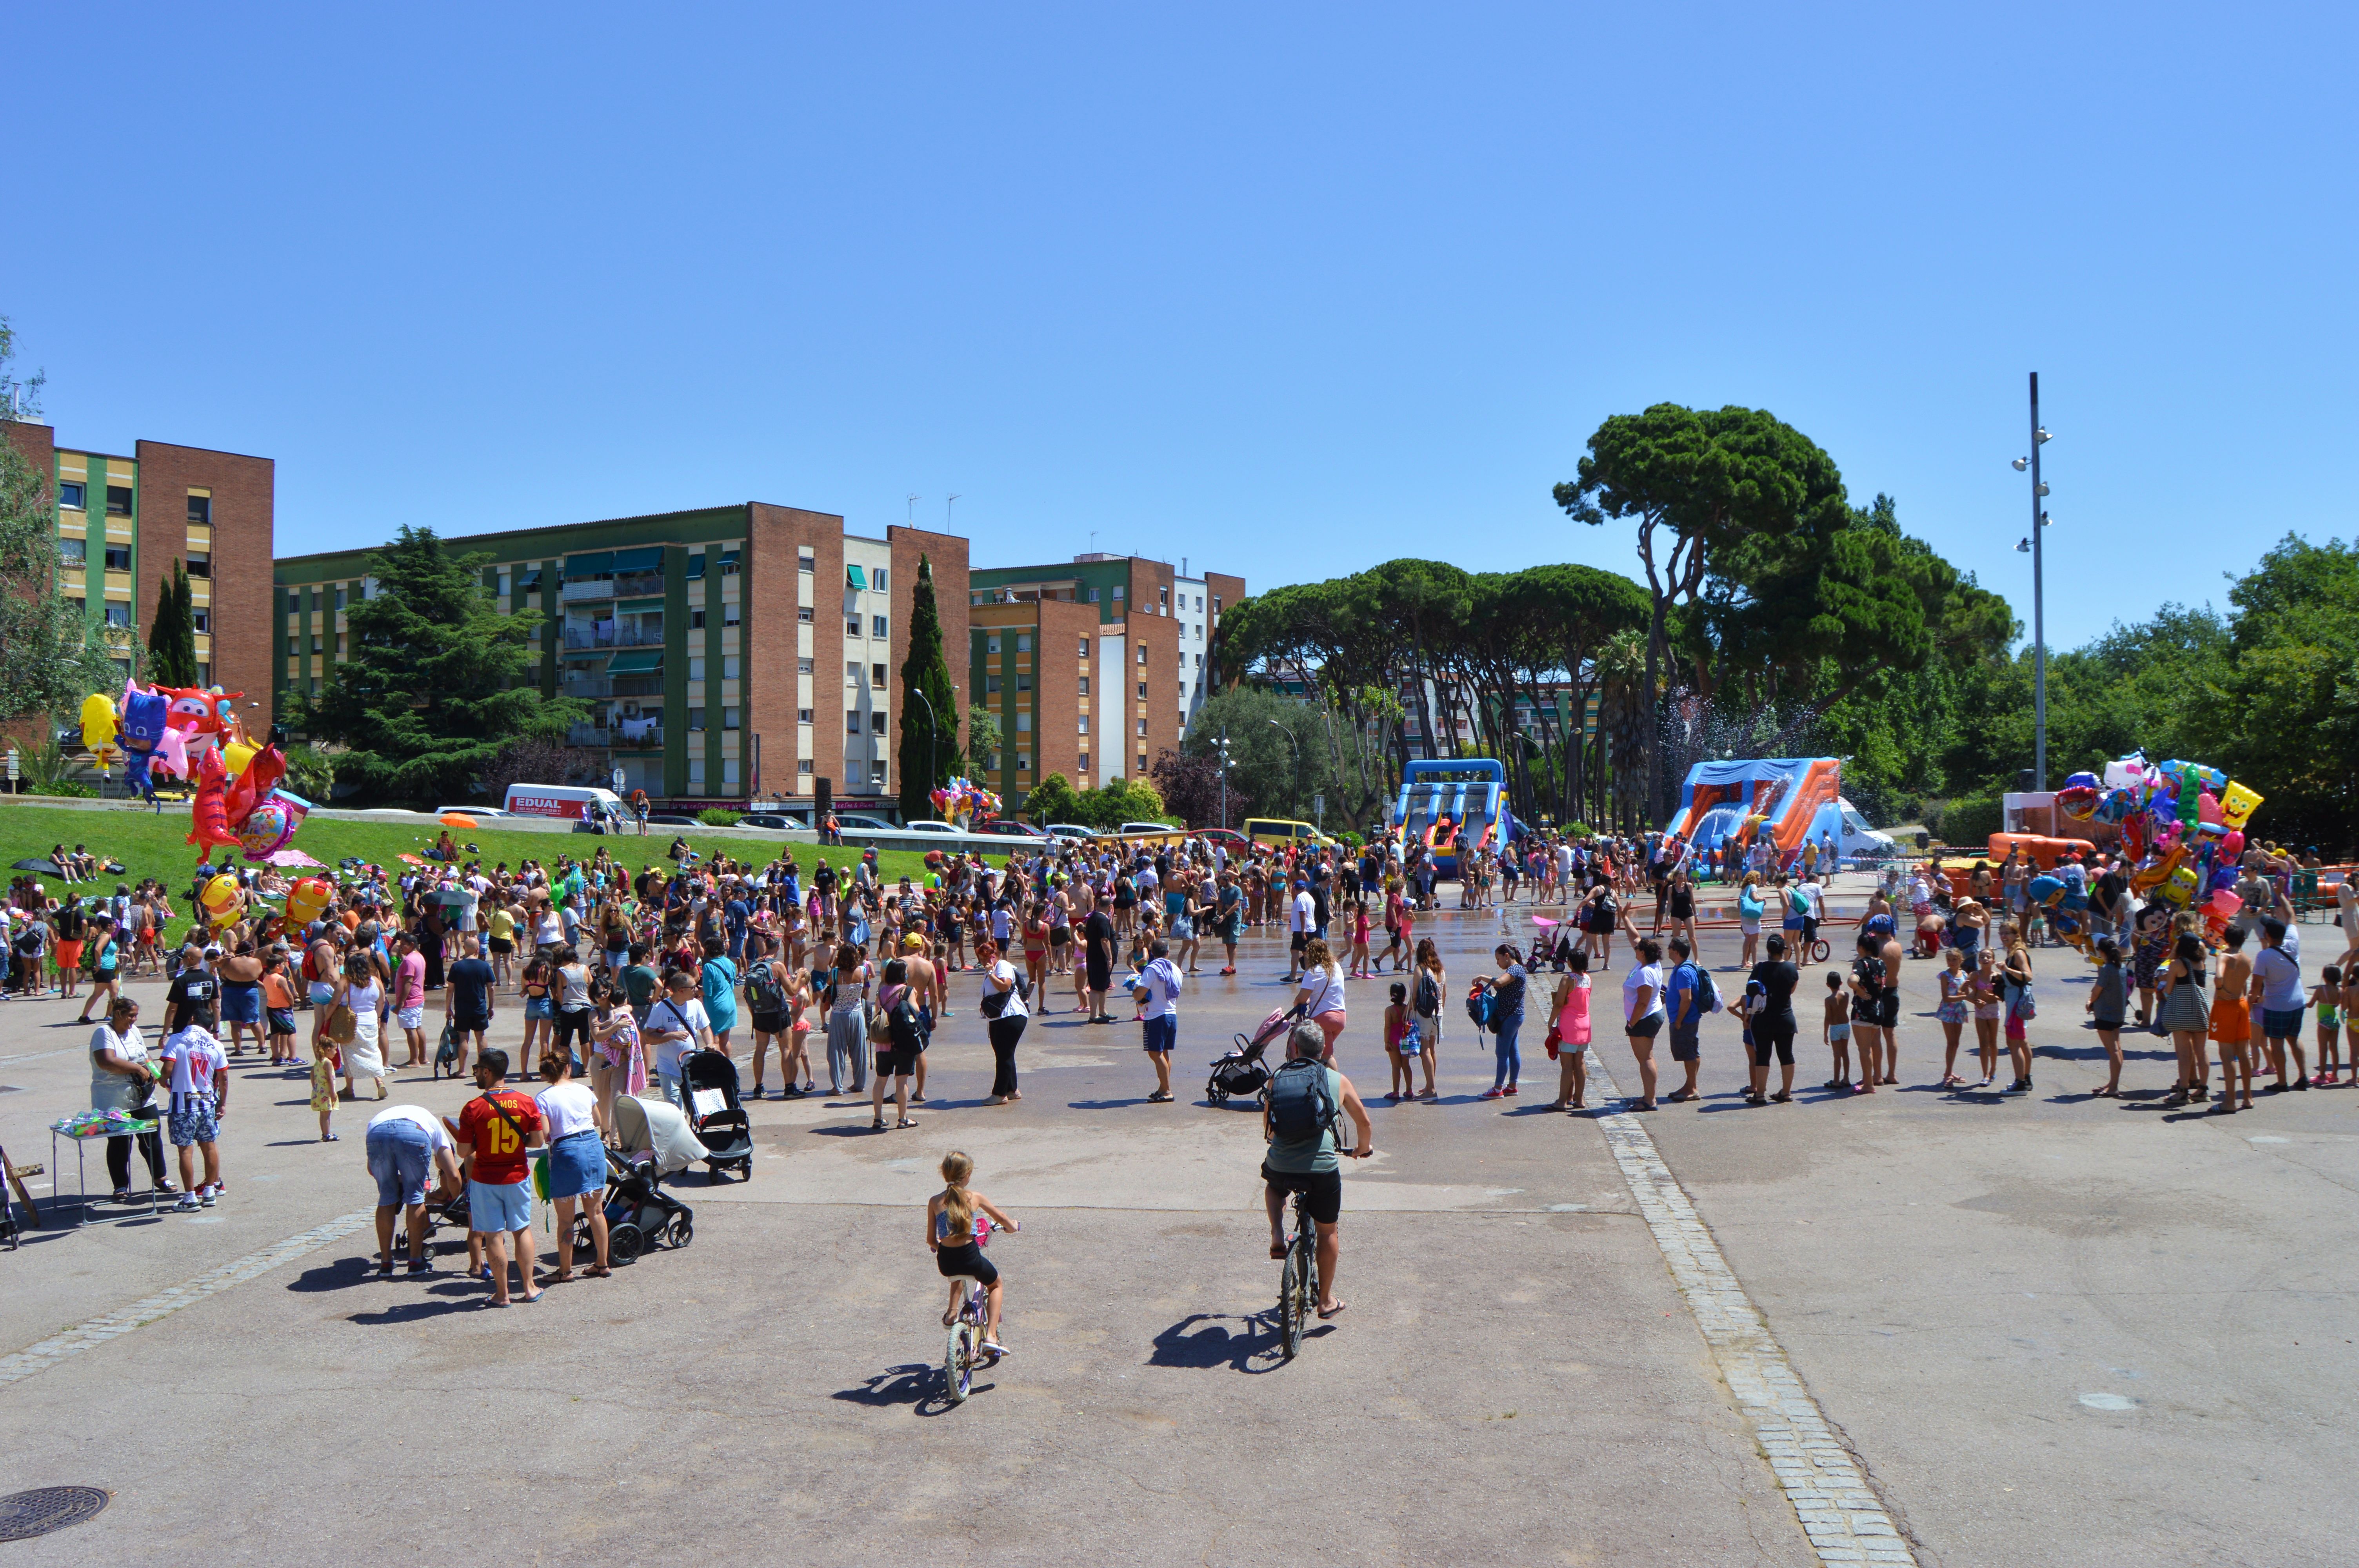 Inflables aquàtics, tobogan gegant i festa de l'escuma al Parc del Turonet. FOTO: Nora Muñoz Otero